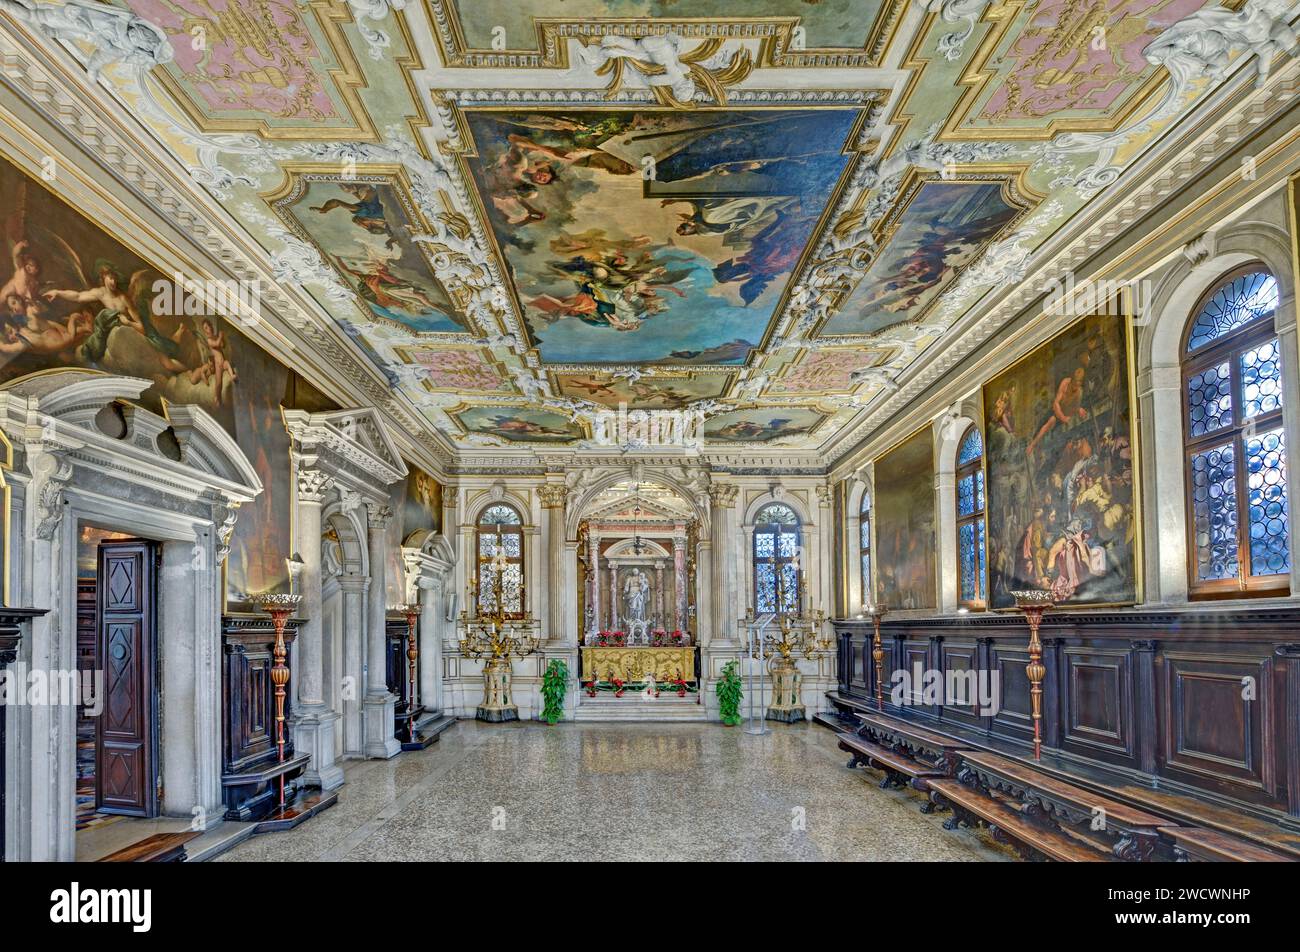 Italia, Veneto, Venezia dichiarata Patrimonio dell'Umanità dall'UNESCO, scuola grande dei Carmini, sala capitolare con soffitto dipinto da Giambattista Tiepolo Foto Stock